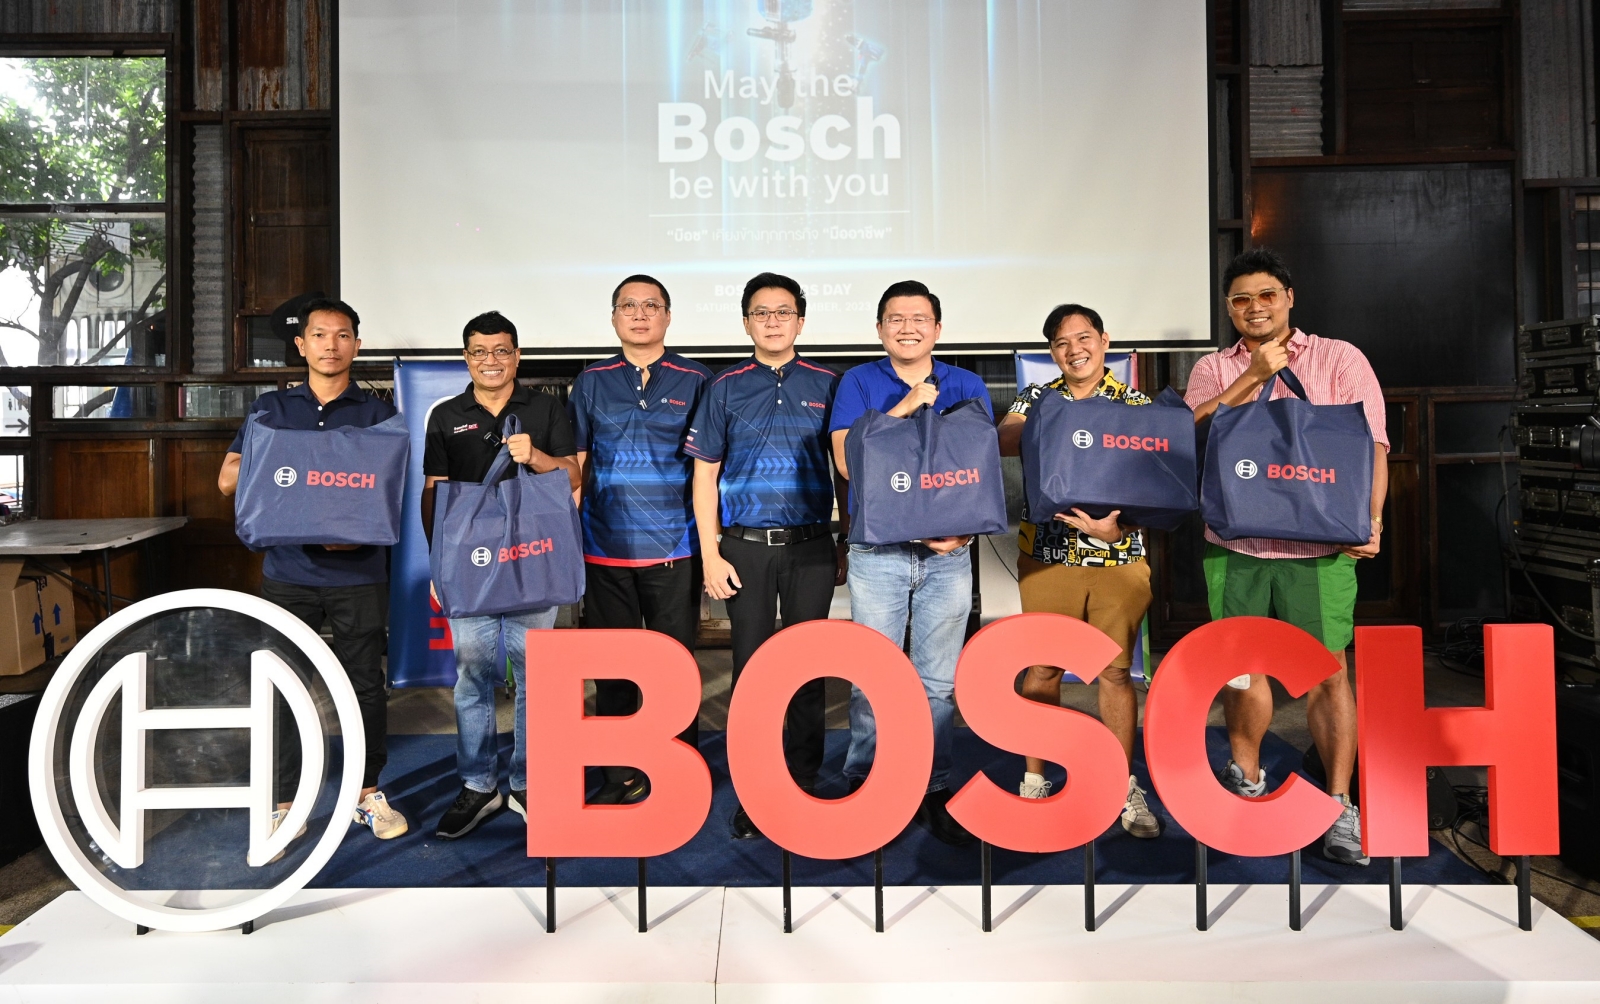 “บ๊อช” กระตุ้นยอดขายปลายปี จัดงานใหญ่ประจำปี Bosch Users Days โชว์นวัตกรรมเครื่องมือช่าง รุกตลาดอีคอมเมิร์ซ ดันยอดโตขึ้น30%